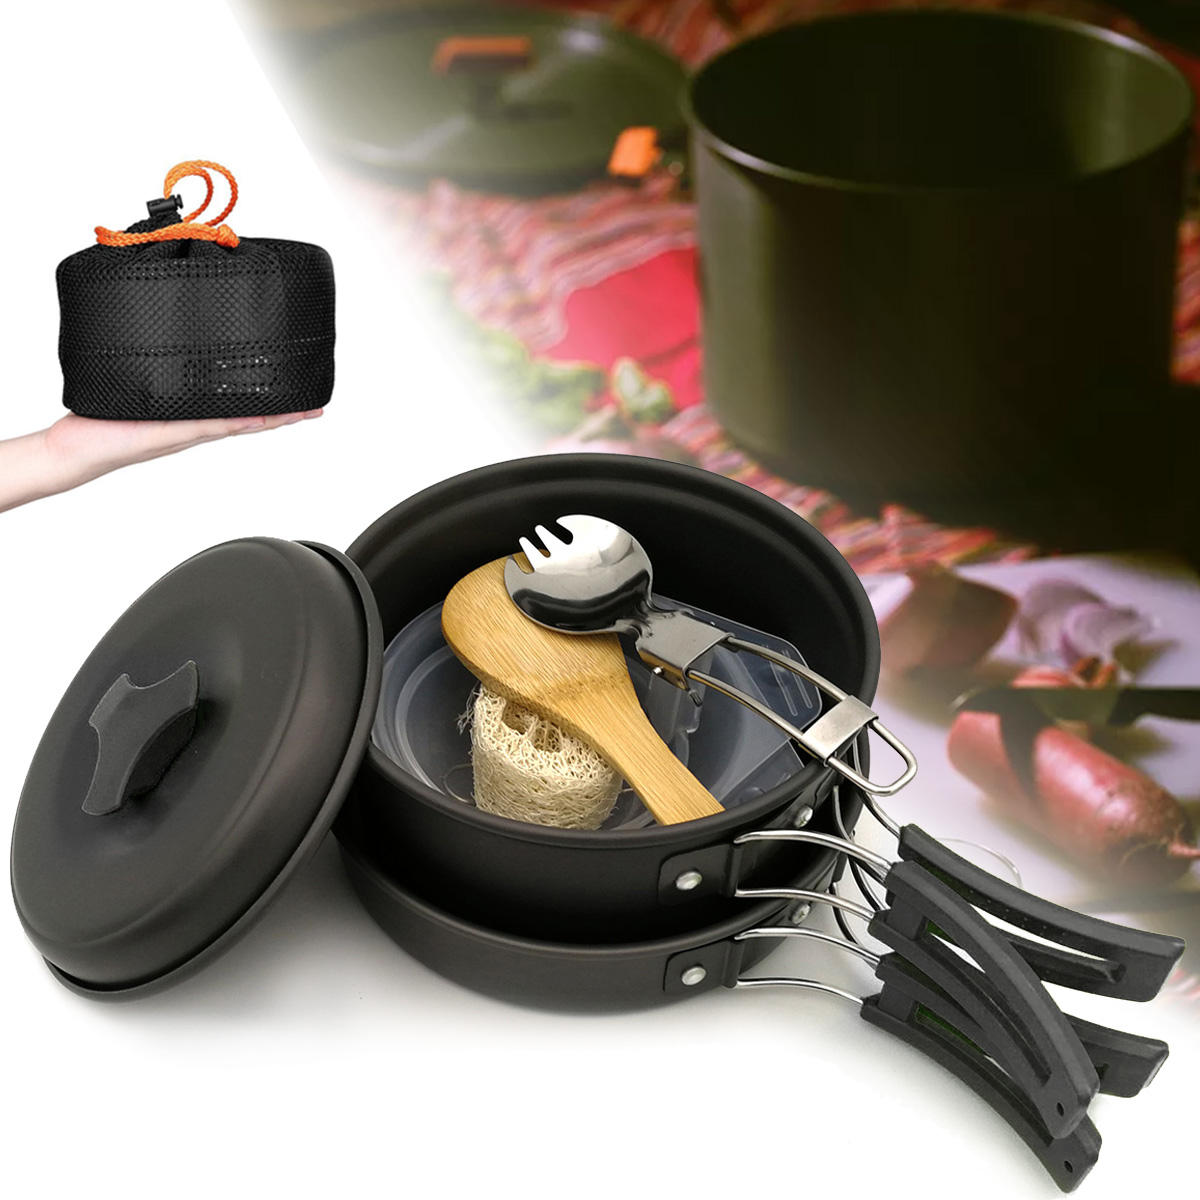 Рюкзак с набором посуды на 1-2 человека для приготовления пищи на газовой горелке с баллонами Butane Propane Canister, включающий кастрюлю, сковороду, миску и столовые приборы для пикника и барбекю.